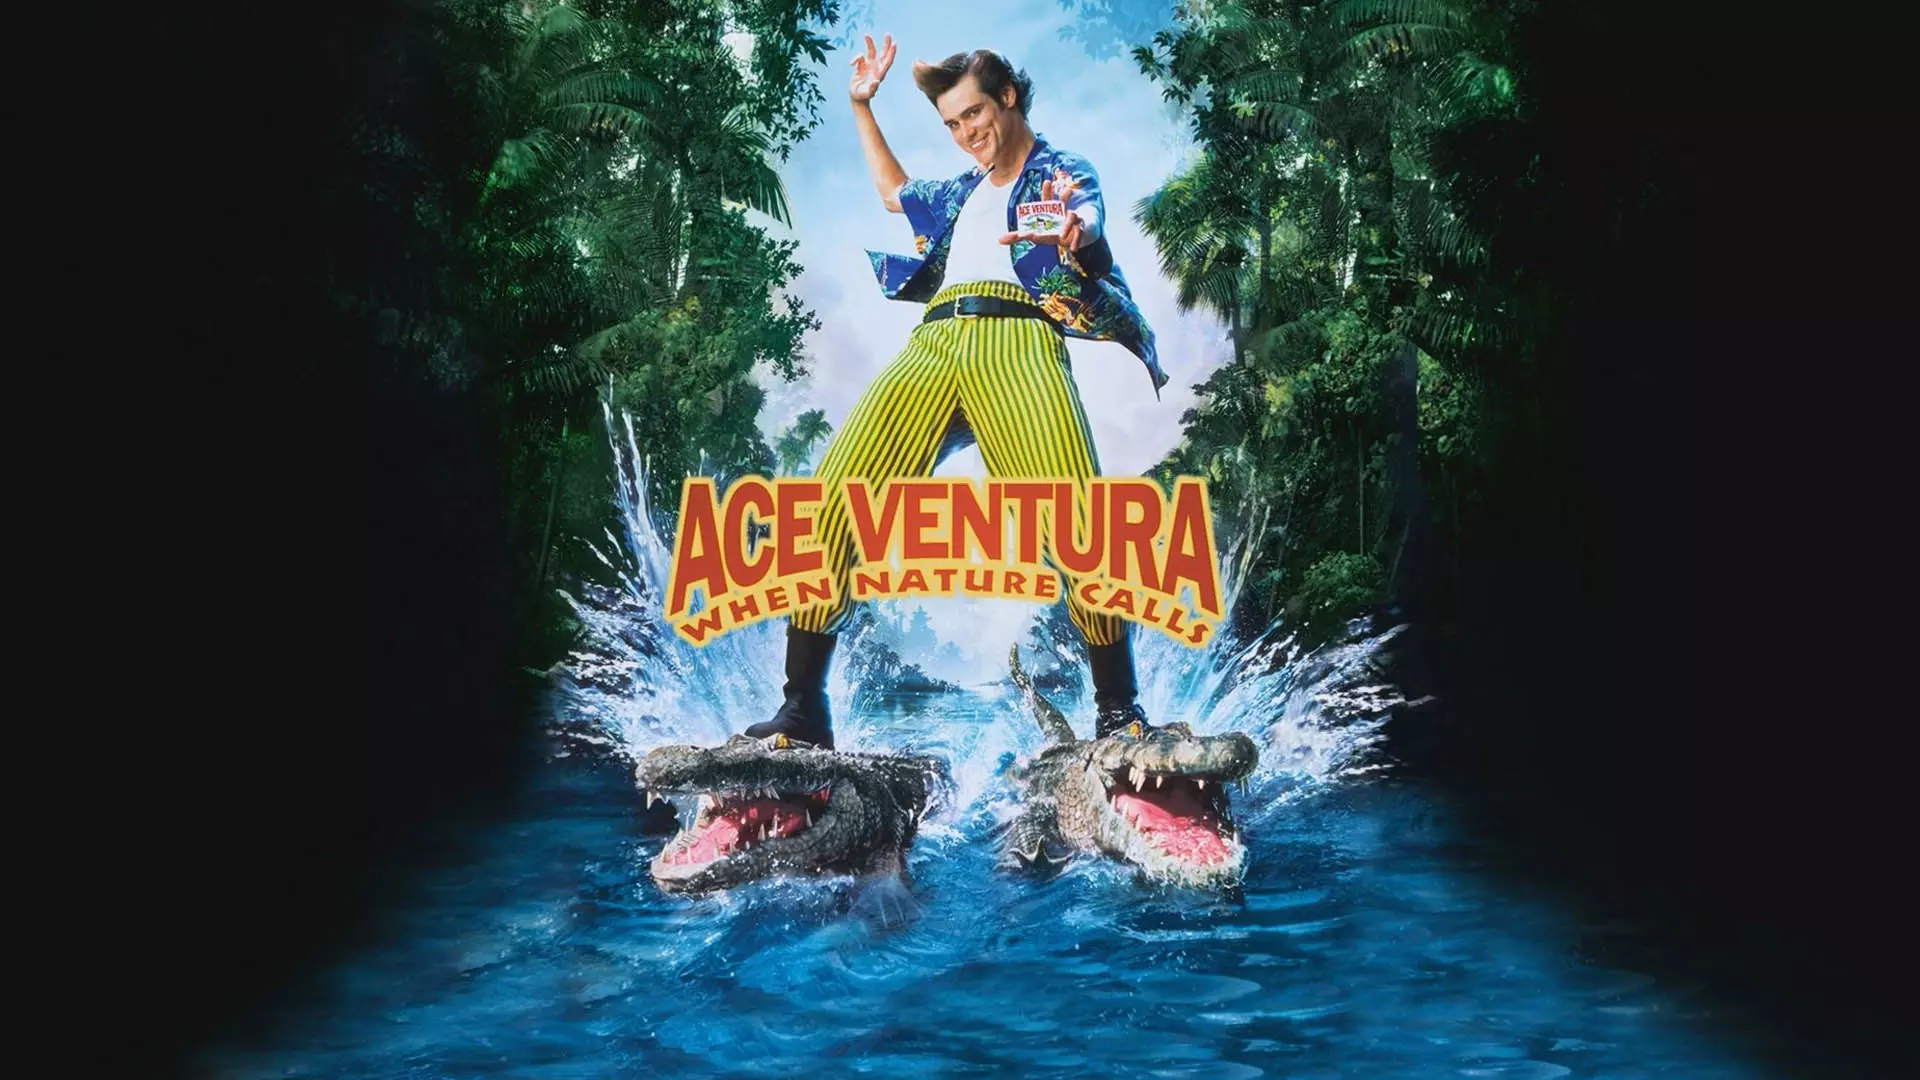 جیم کری روی دو تمساح در پوستر فیلم Ace Ventura: When Nature Calls